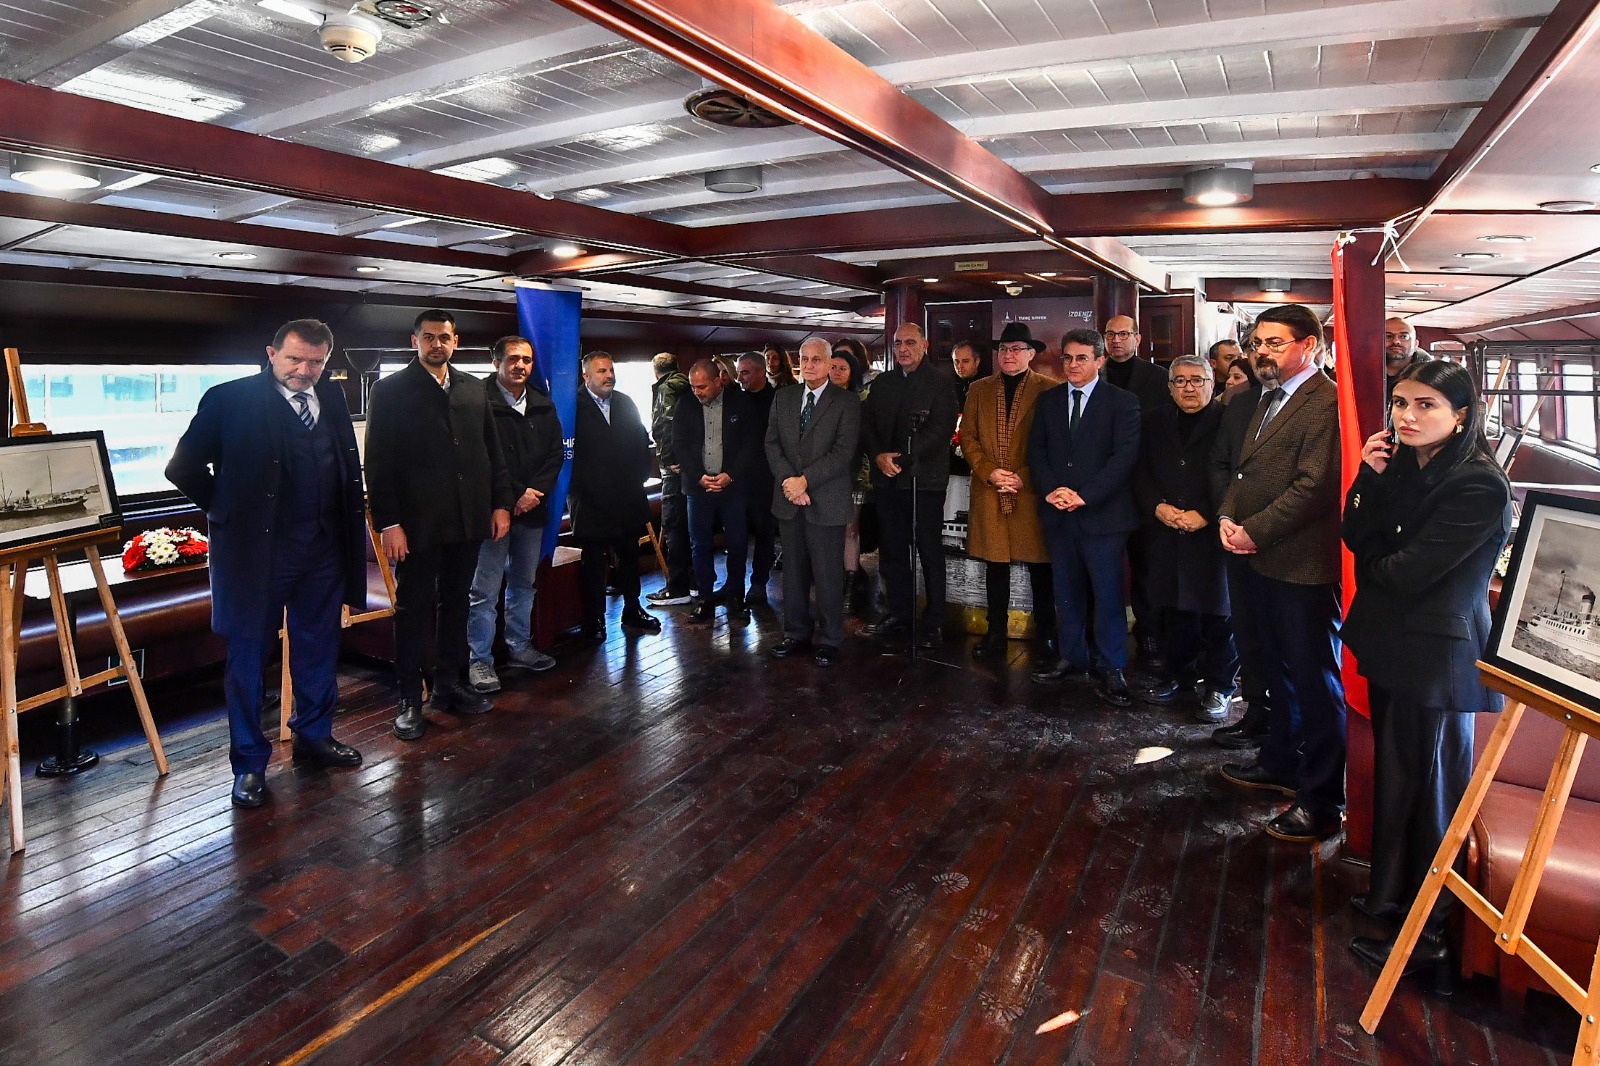 Tarihi Bergama Vapuru’nda “Atatürk ve Cumhuriyet Gemileri Sergisi” açıldı